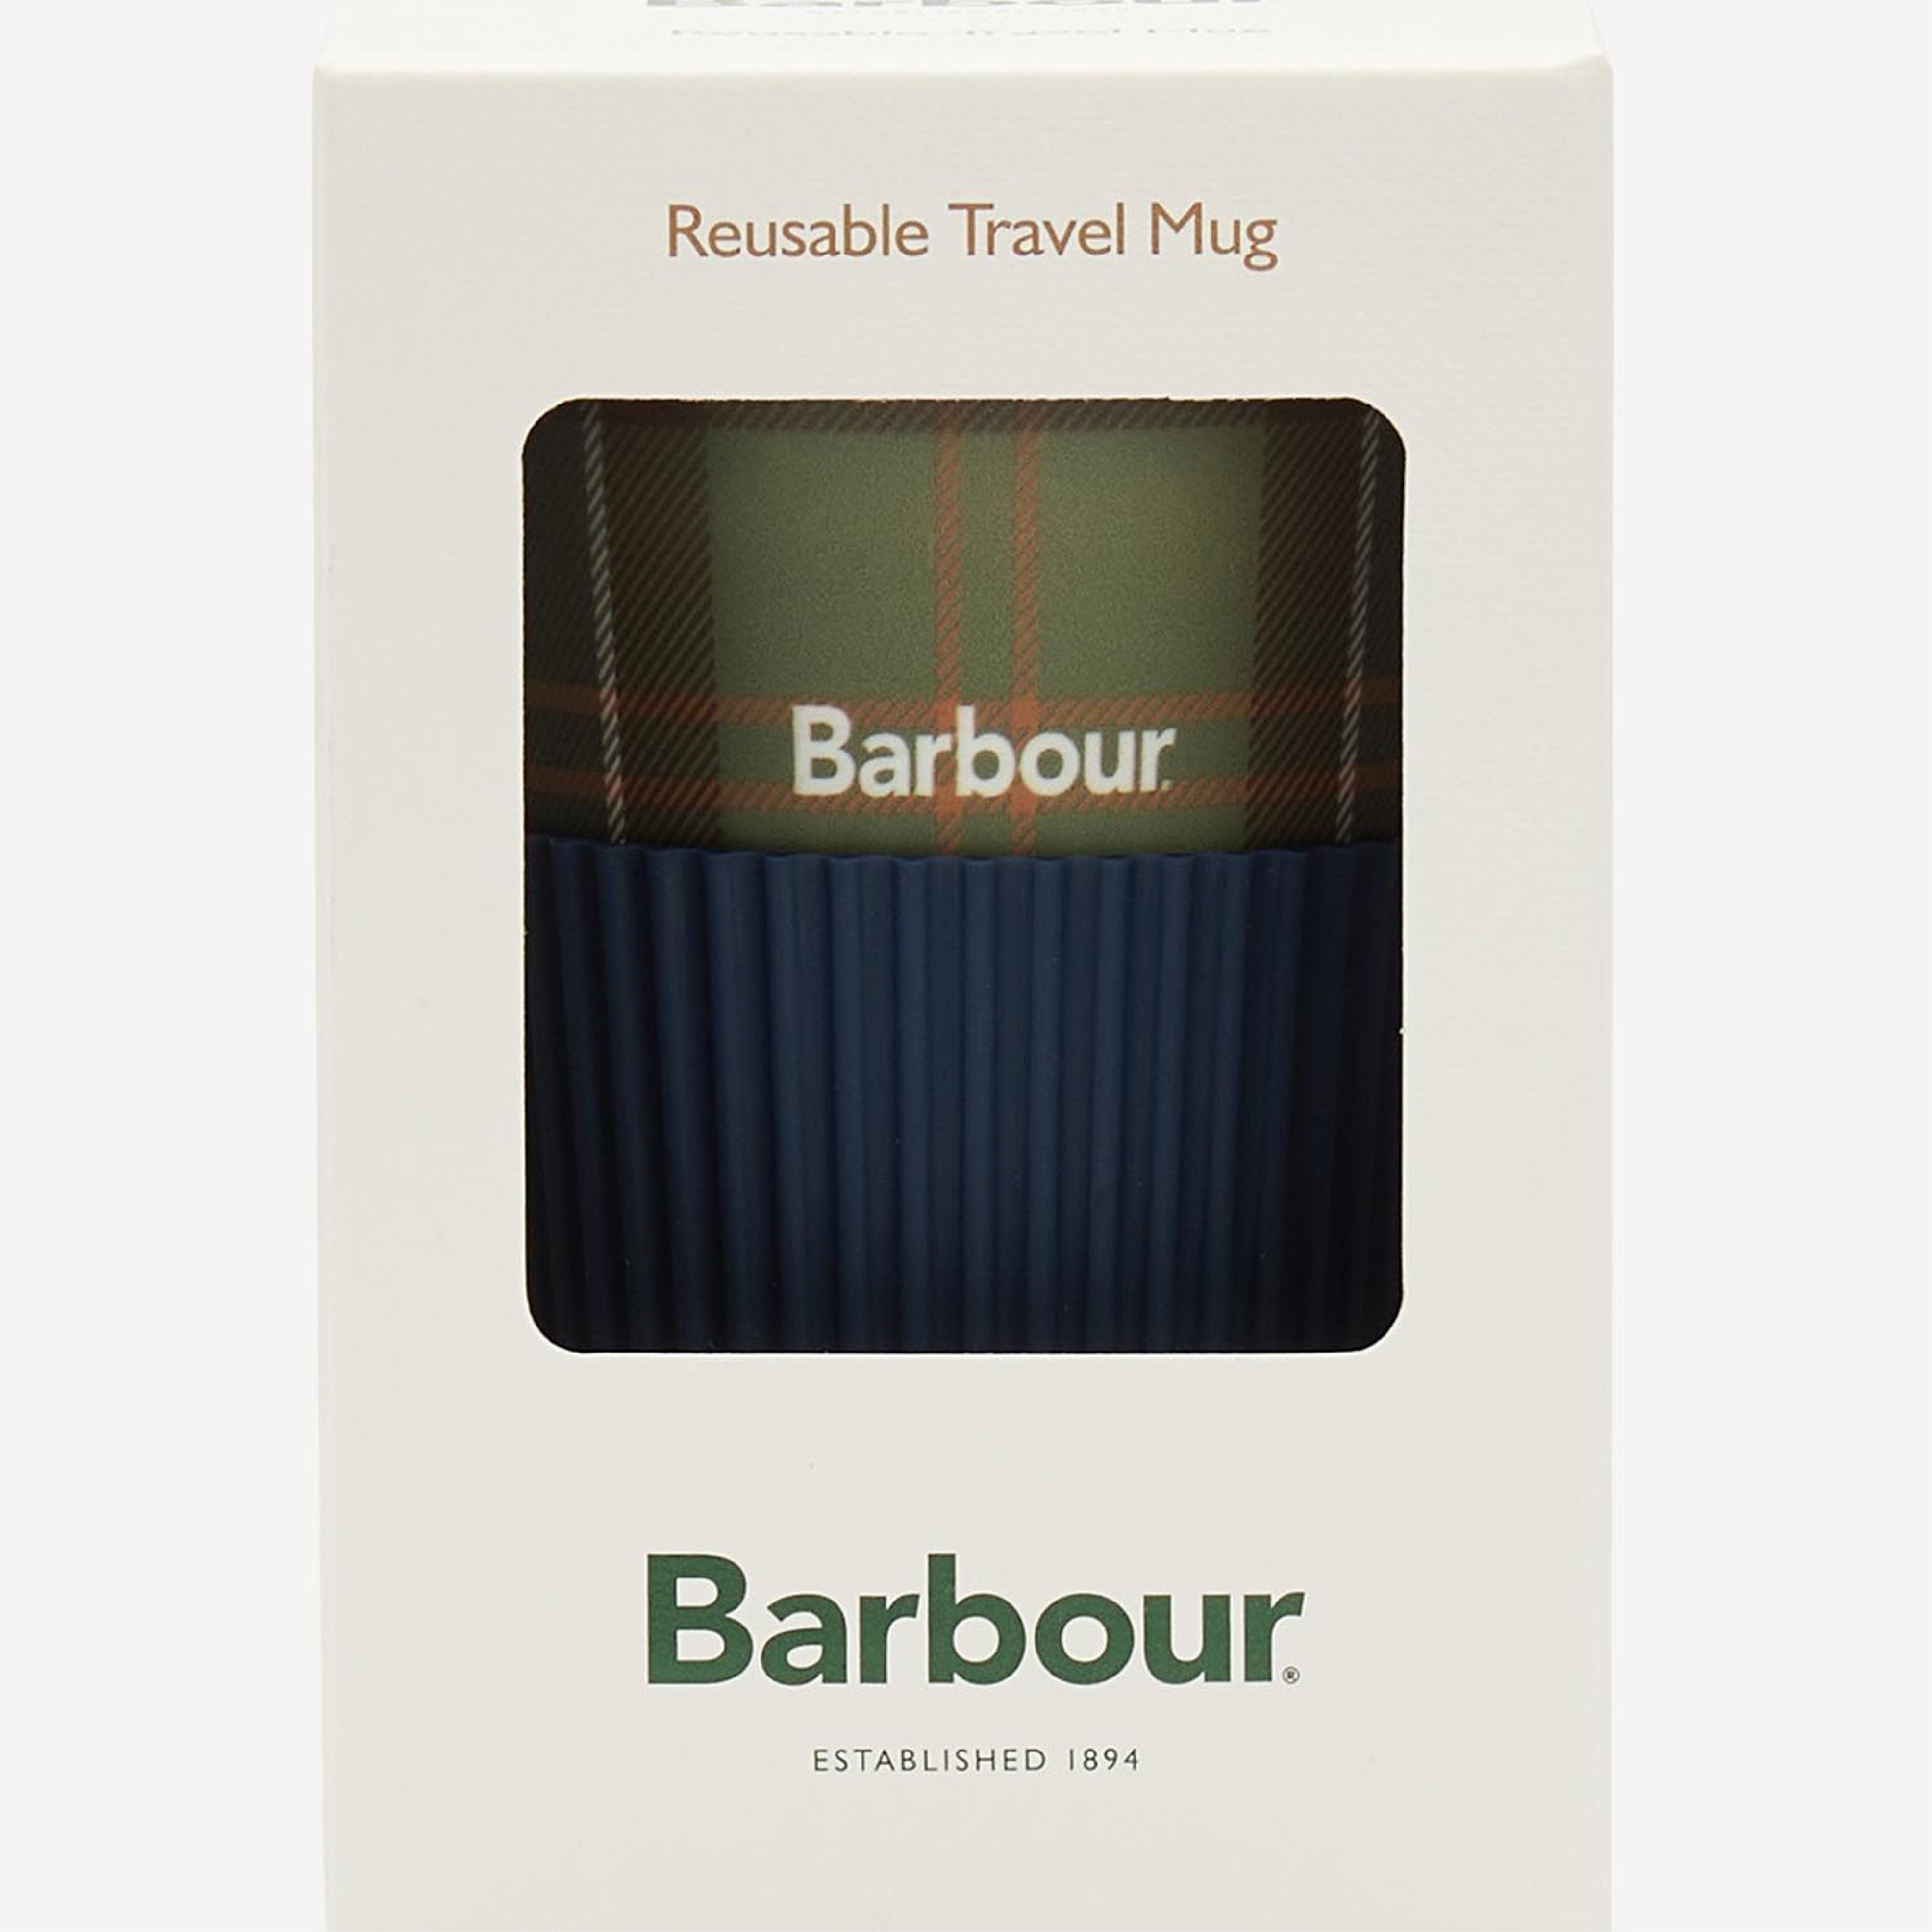 Barbour Reuse Trv Mug